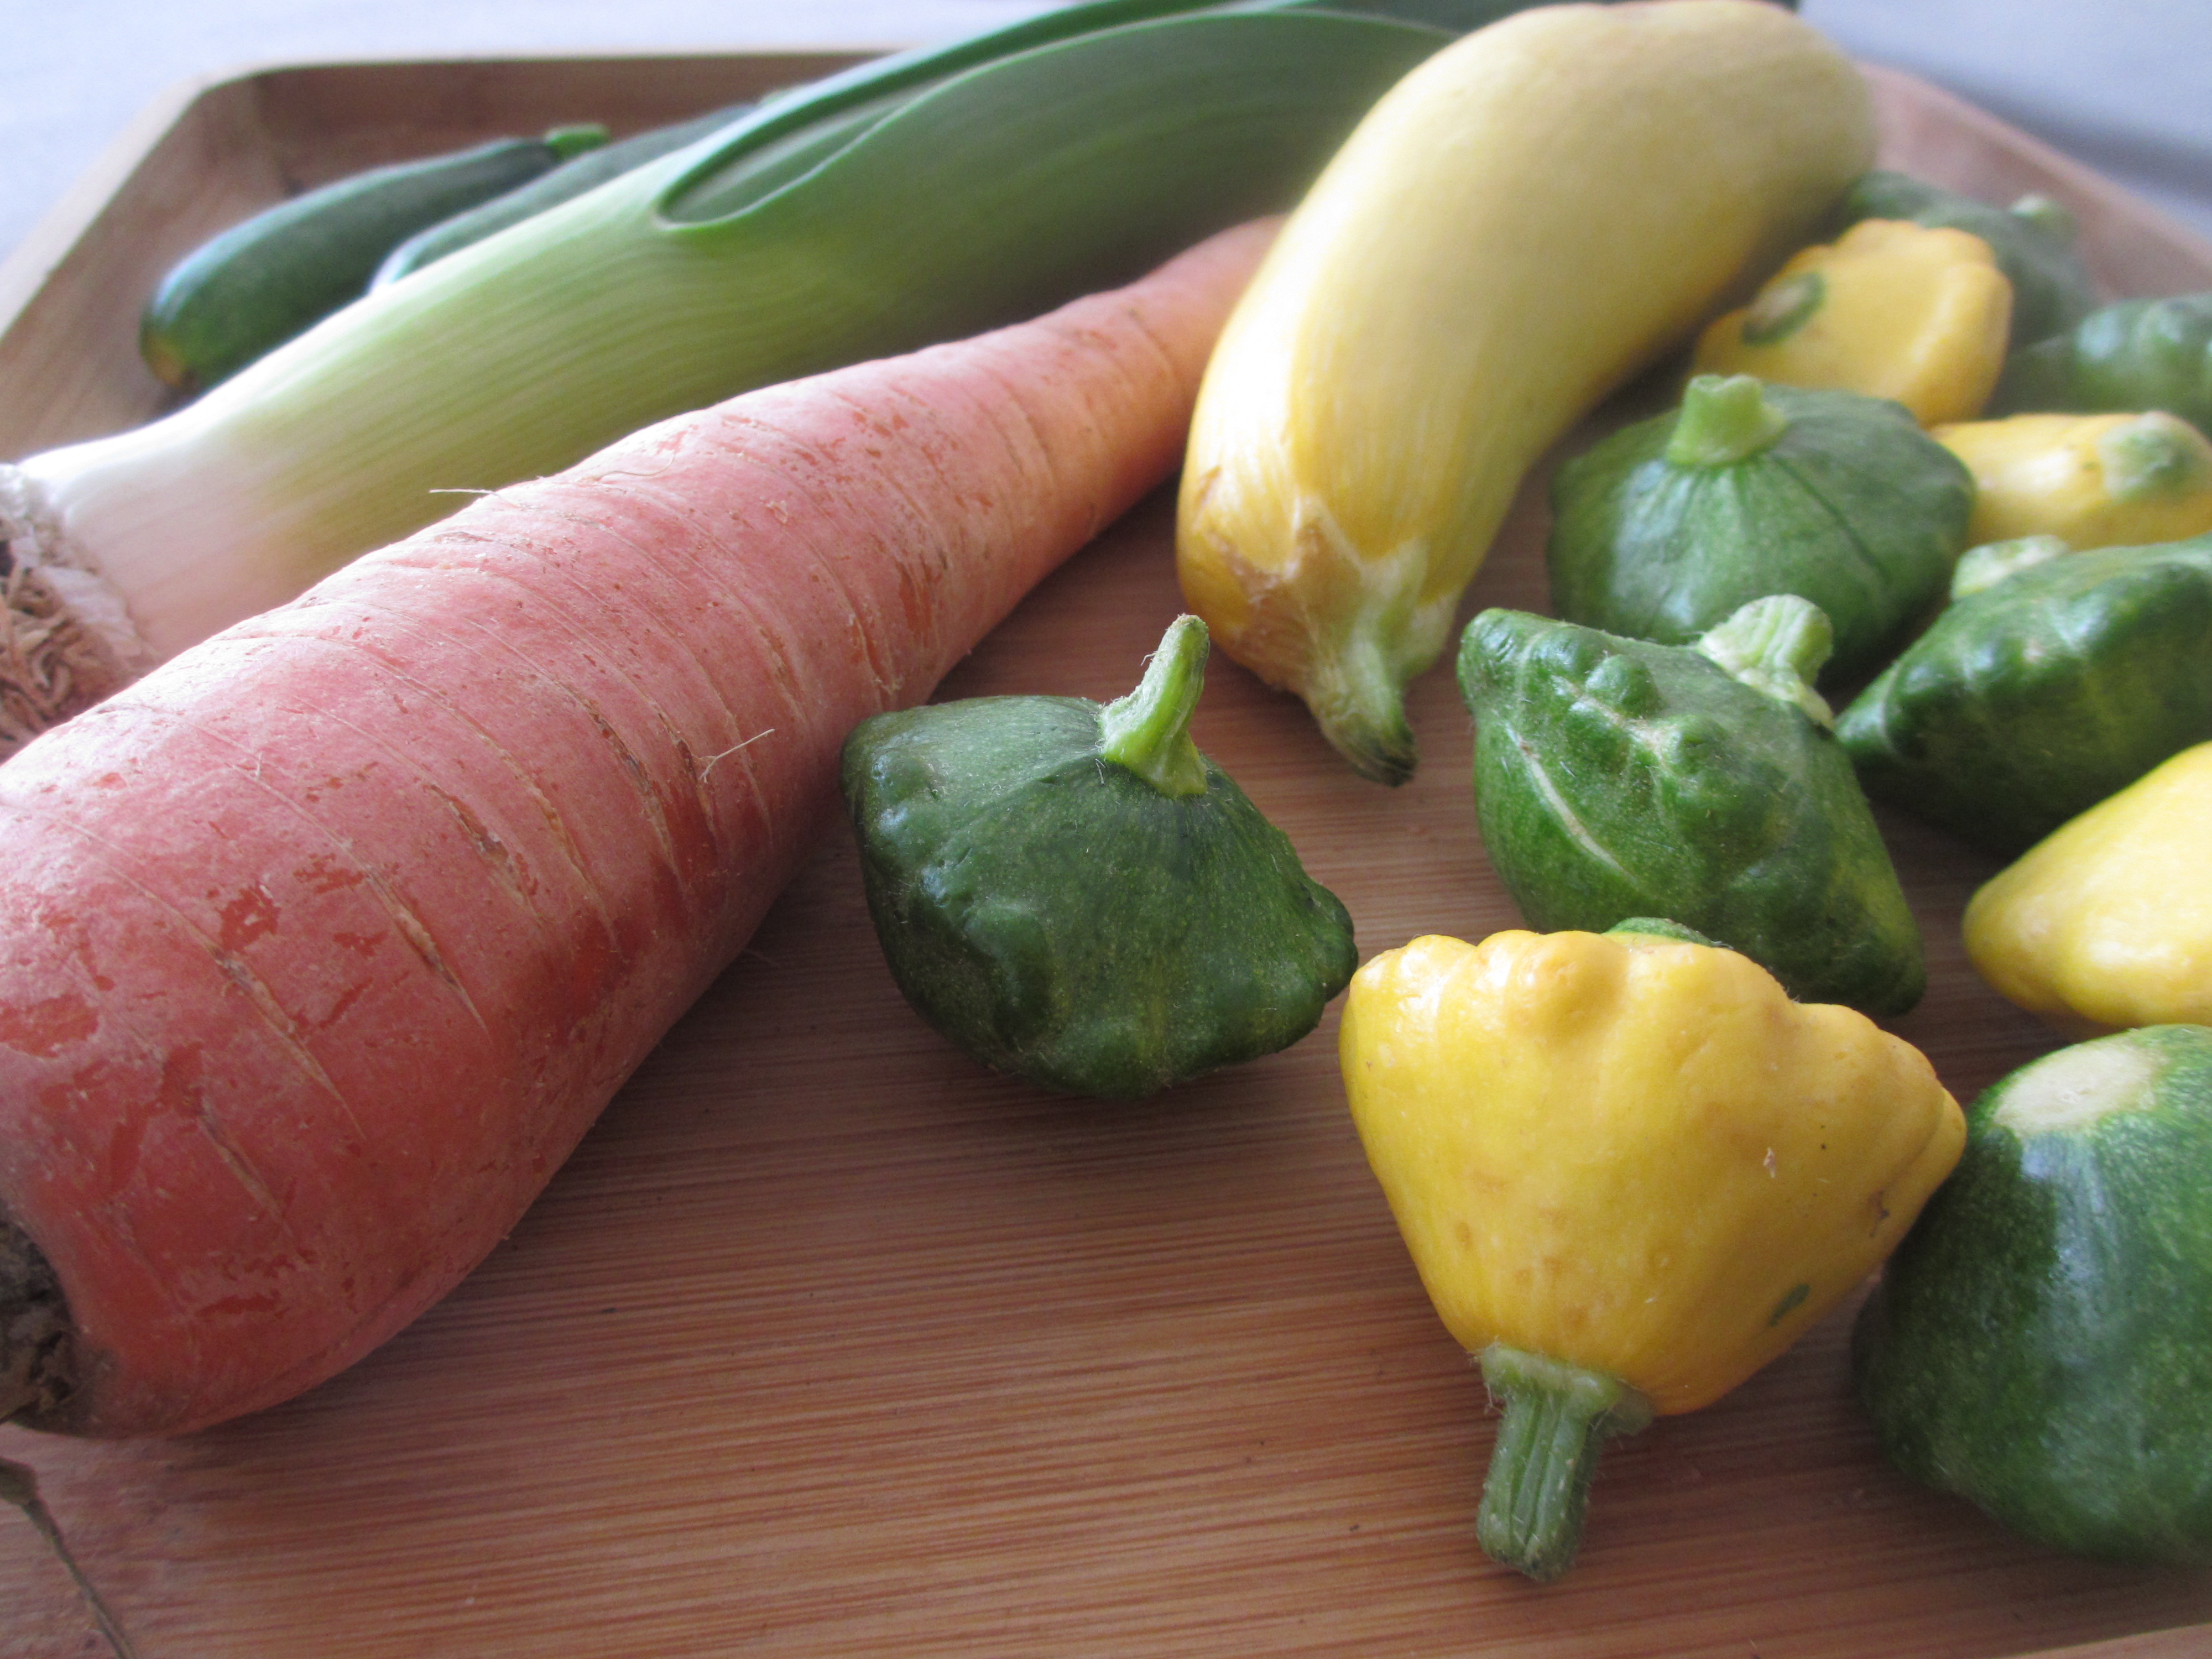 Carrots, leeks, and squash